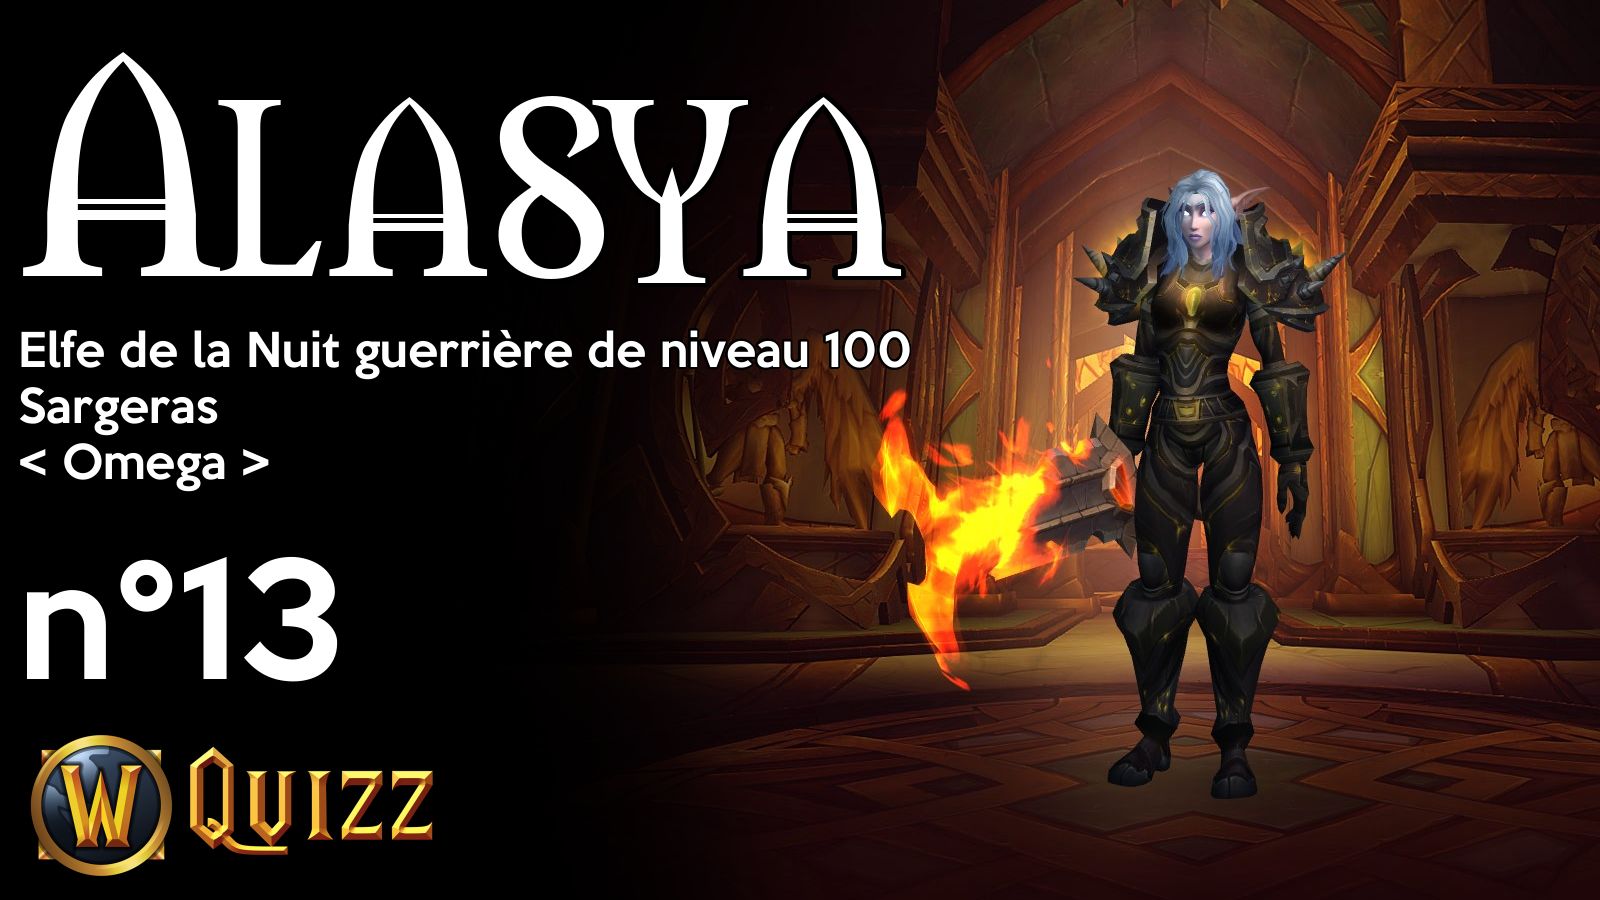 Alasya, Elfe de la Nuit guerrière de niveau 100, Sargeras